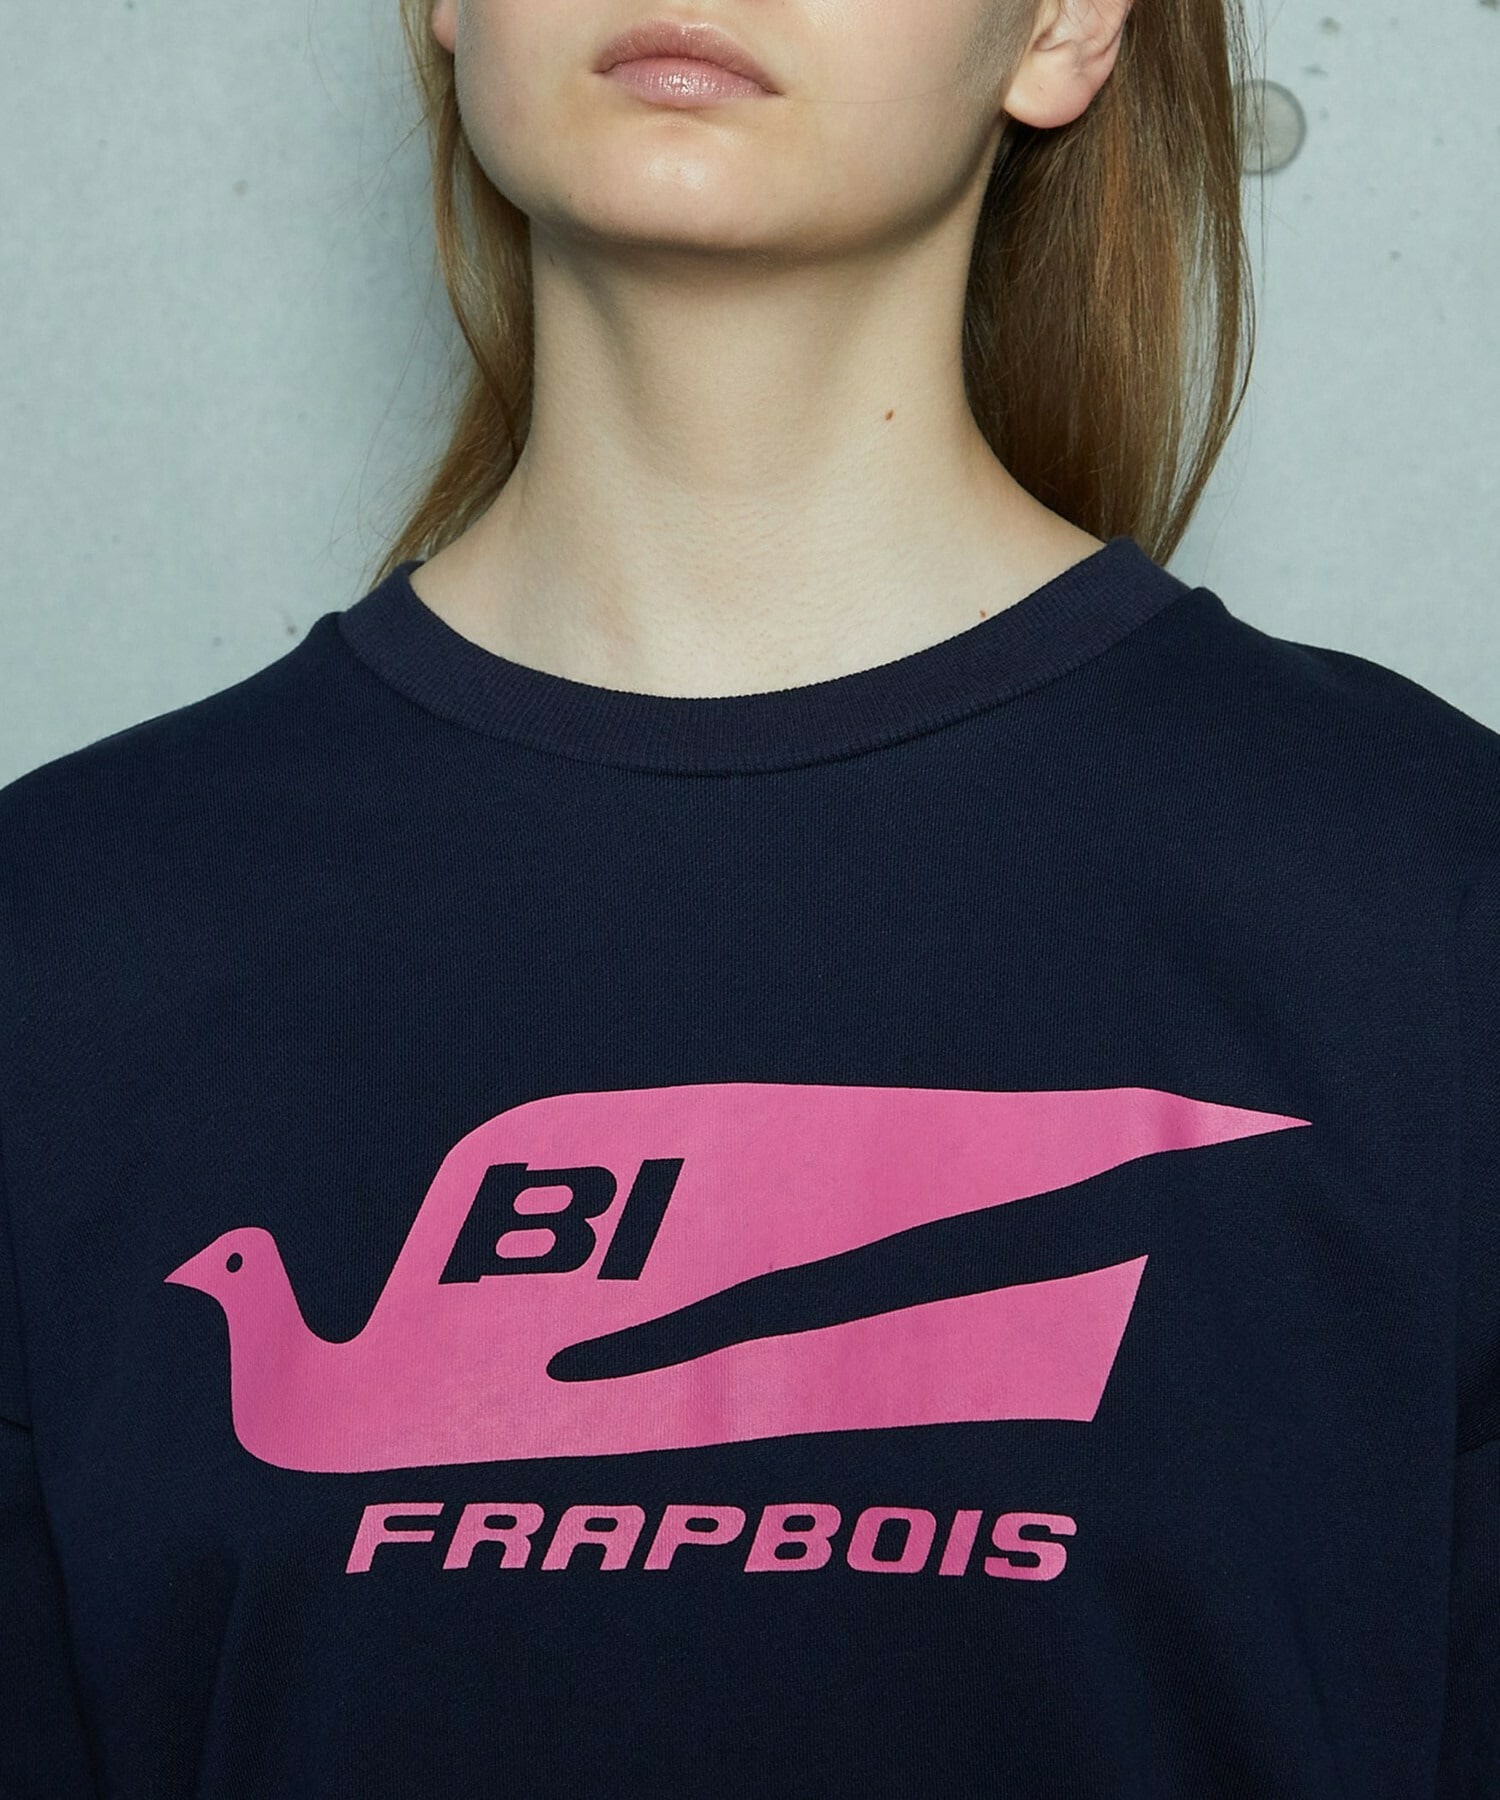 【FRAPBOIS】FRAPBOIS×BRANIFF INTERNATIONAL スウェット 詳細画像 ネイビー 3